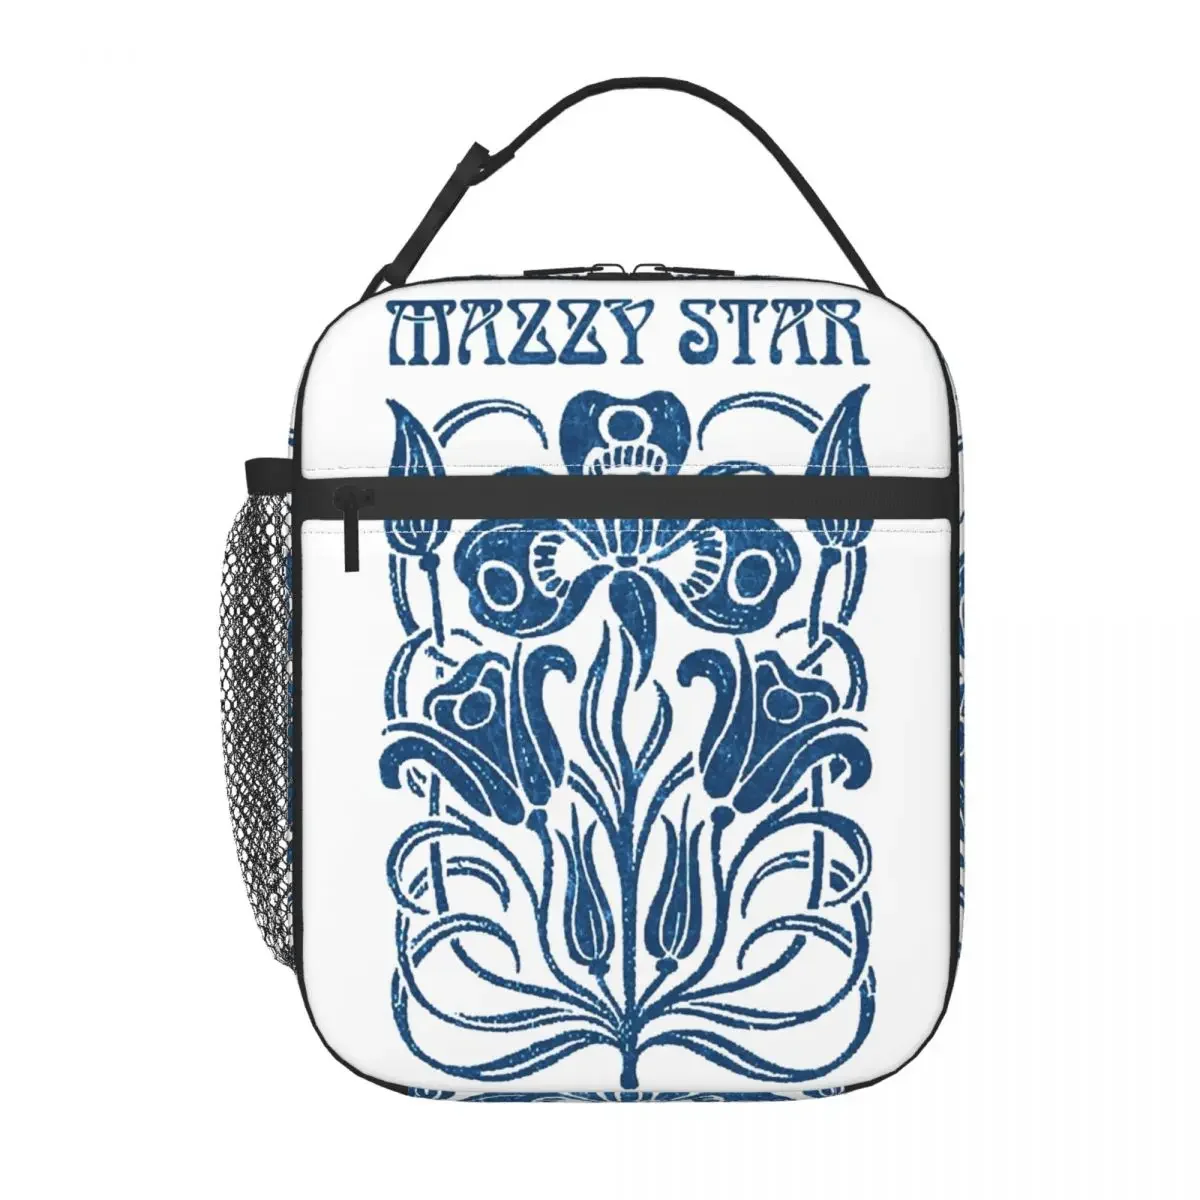 Фотография Mazzy Star Изолированная сумка для ланча Термоконтейнер для ланча Музыкальная группа Портативная сумка-ланч-бокс Мужчины Женщины Путешествия в колледж Изображение 2 